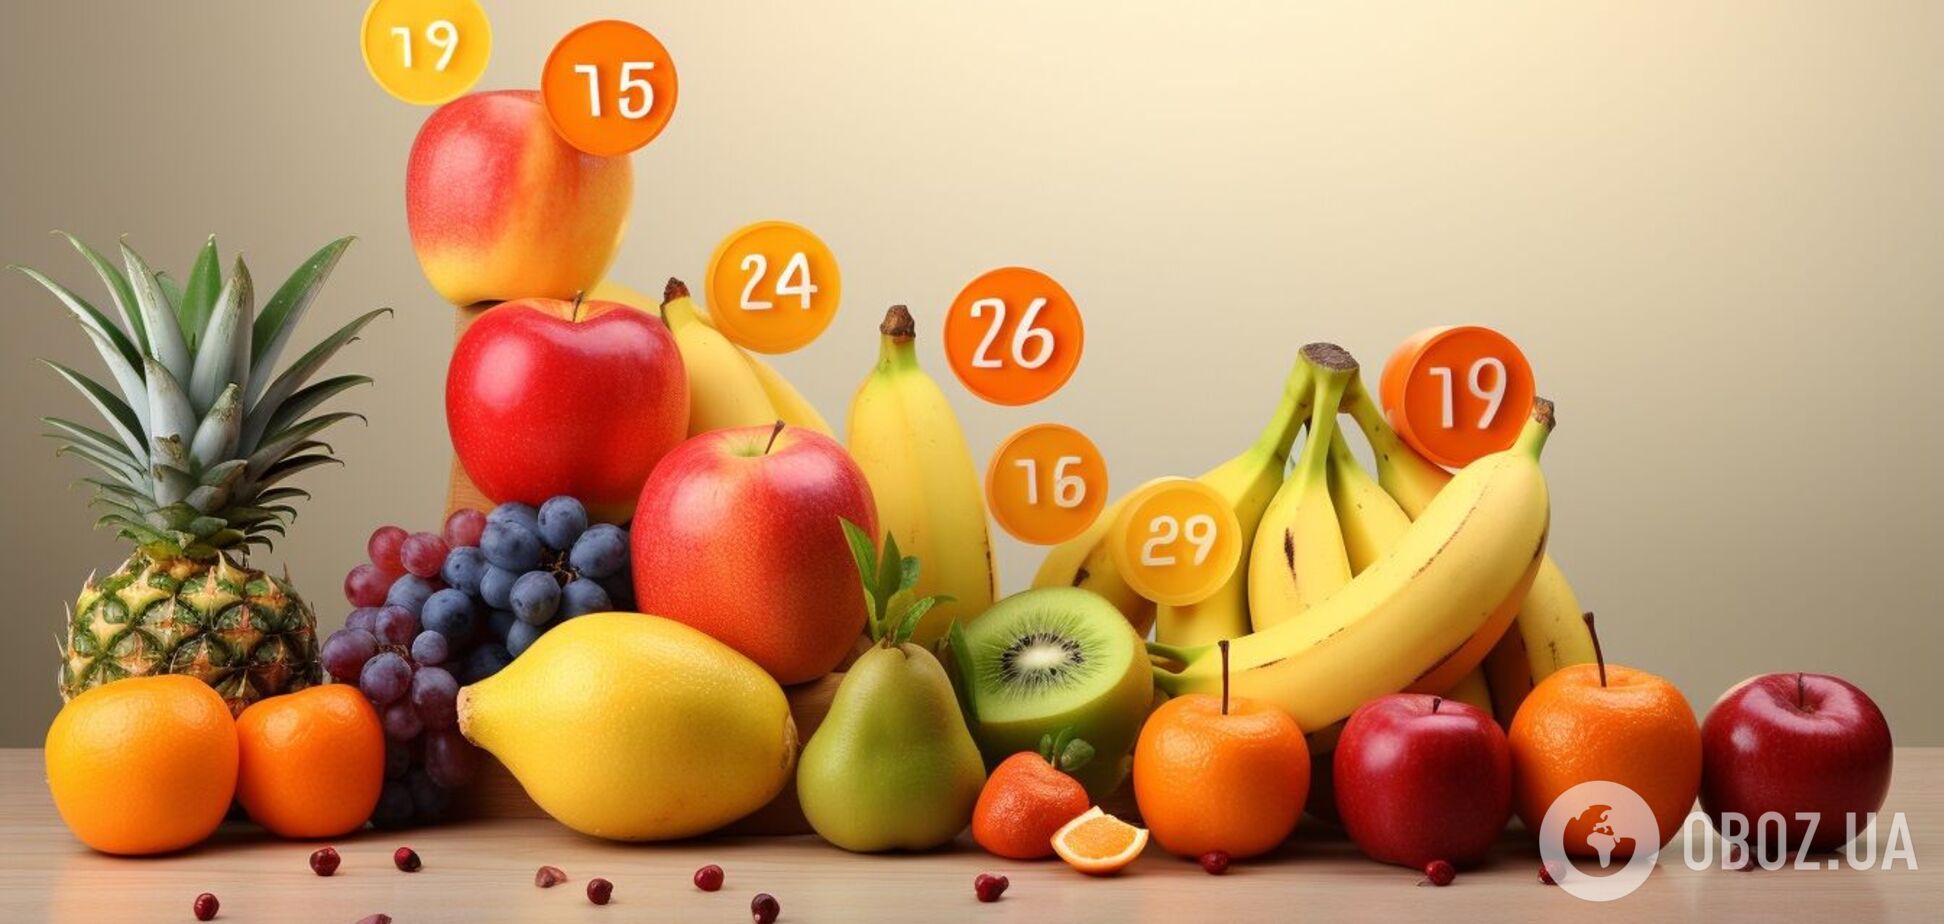 Відповідь знайдуть не всі: математична головоломка з фруктами